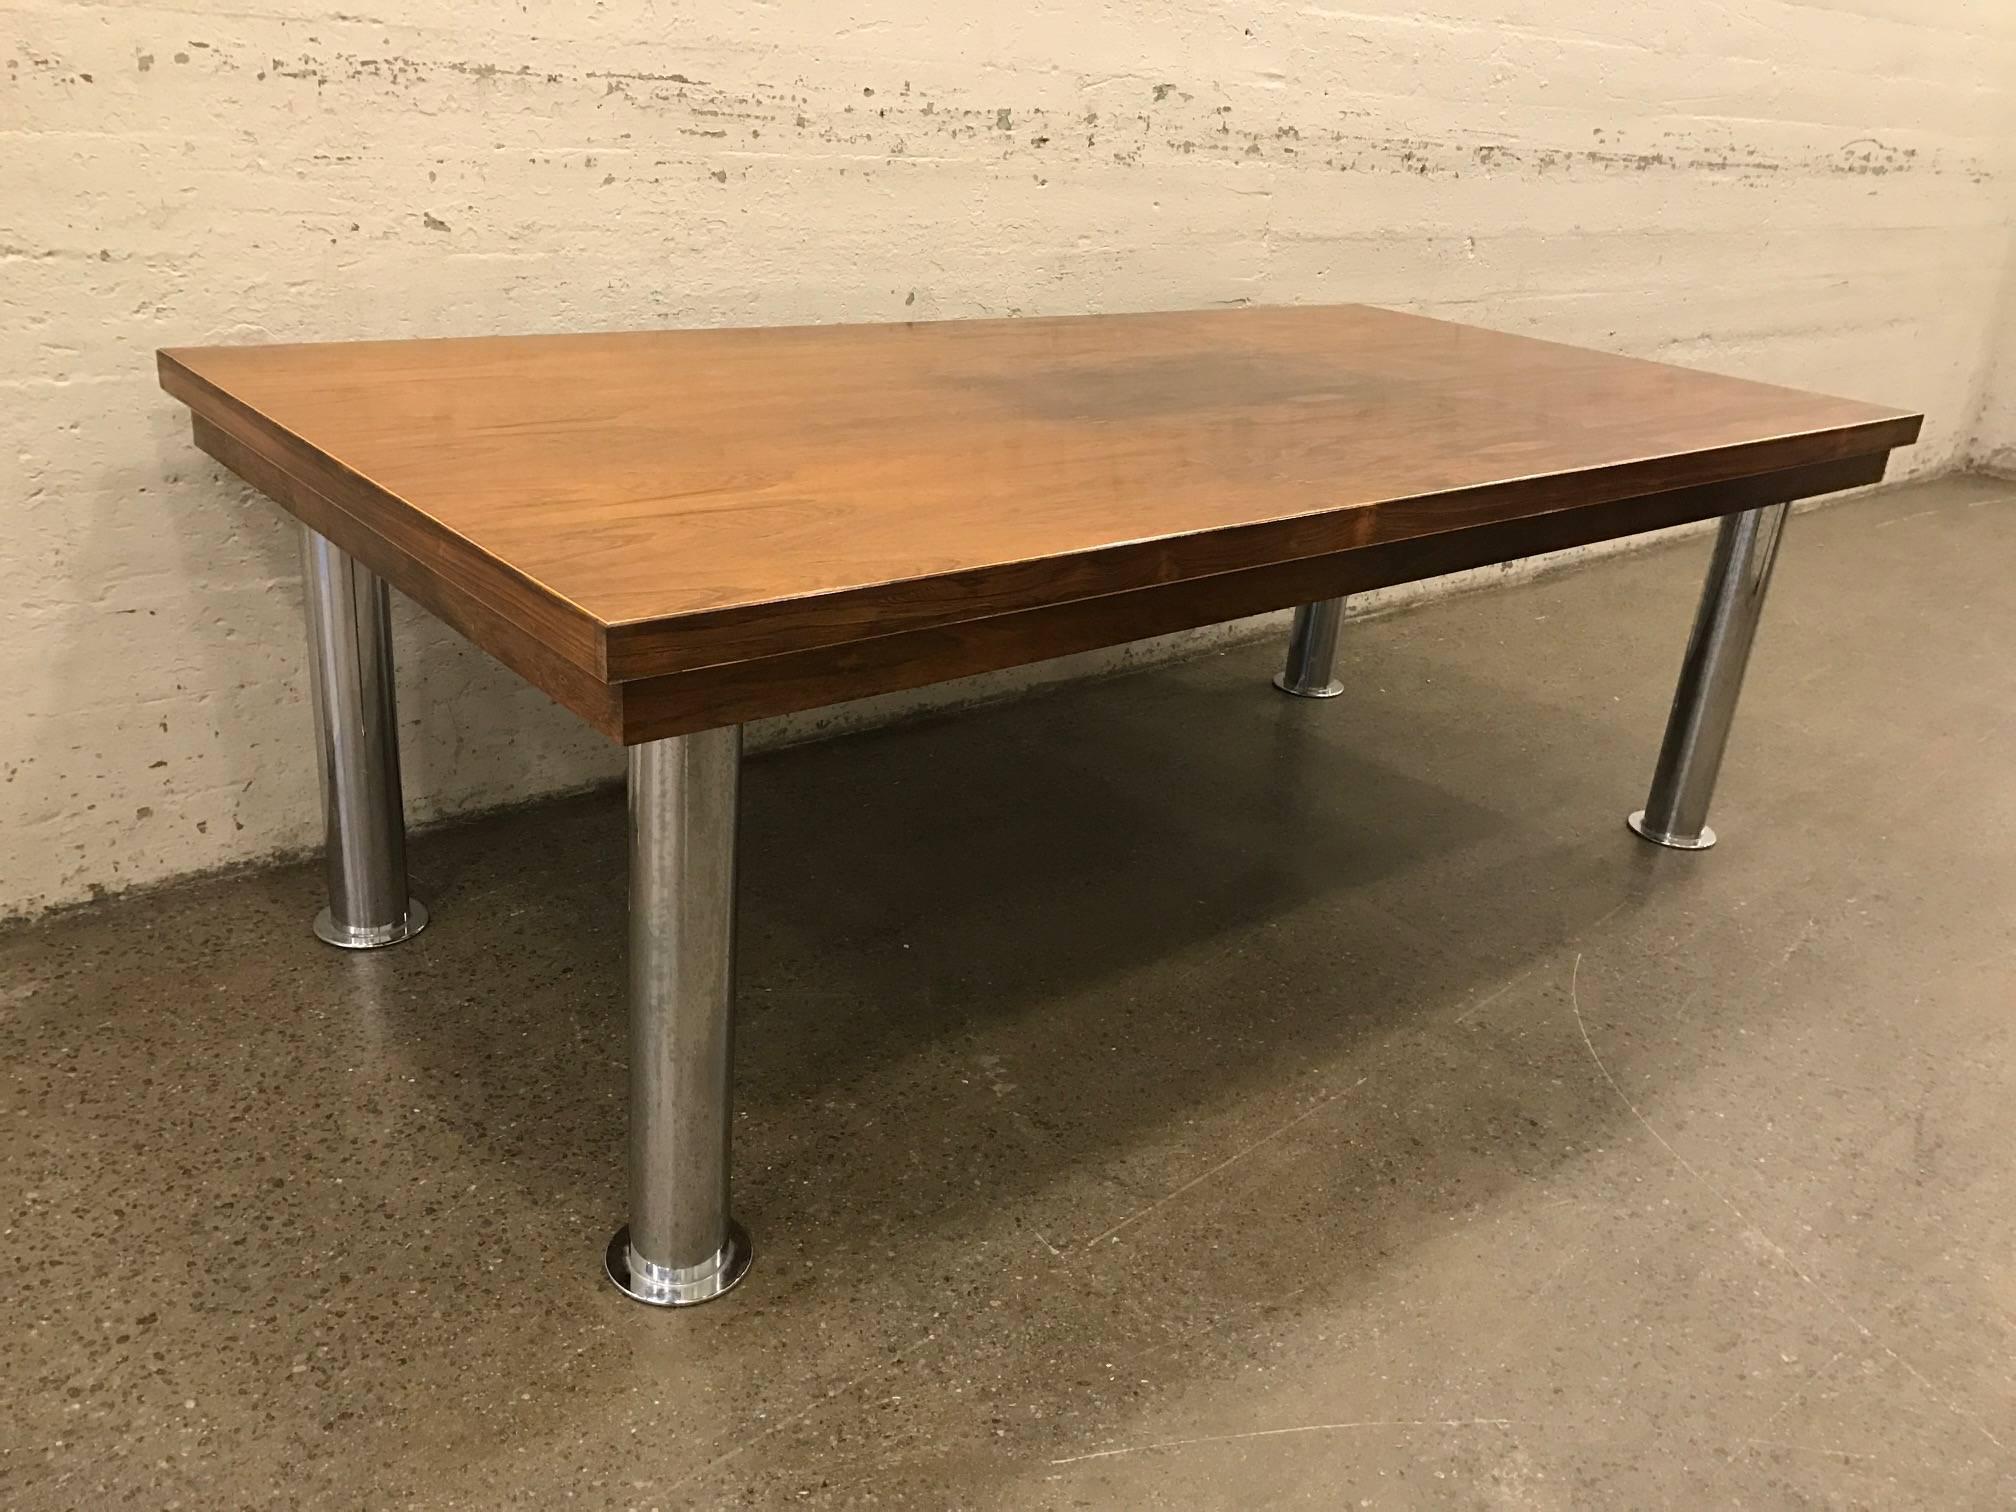 Table de conférence en bois de rose et chrome, de style moderne du milieu du siècle, avec pieds cylindriques en acier chromé. Table industrielle. Peut également être utilisée comme table à manger.